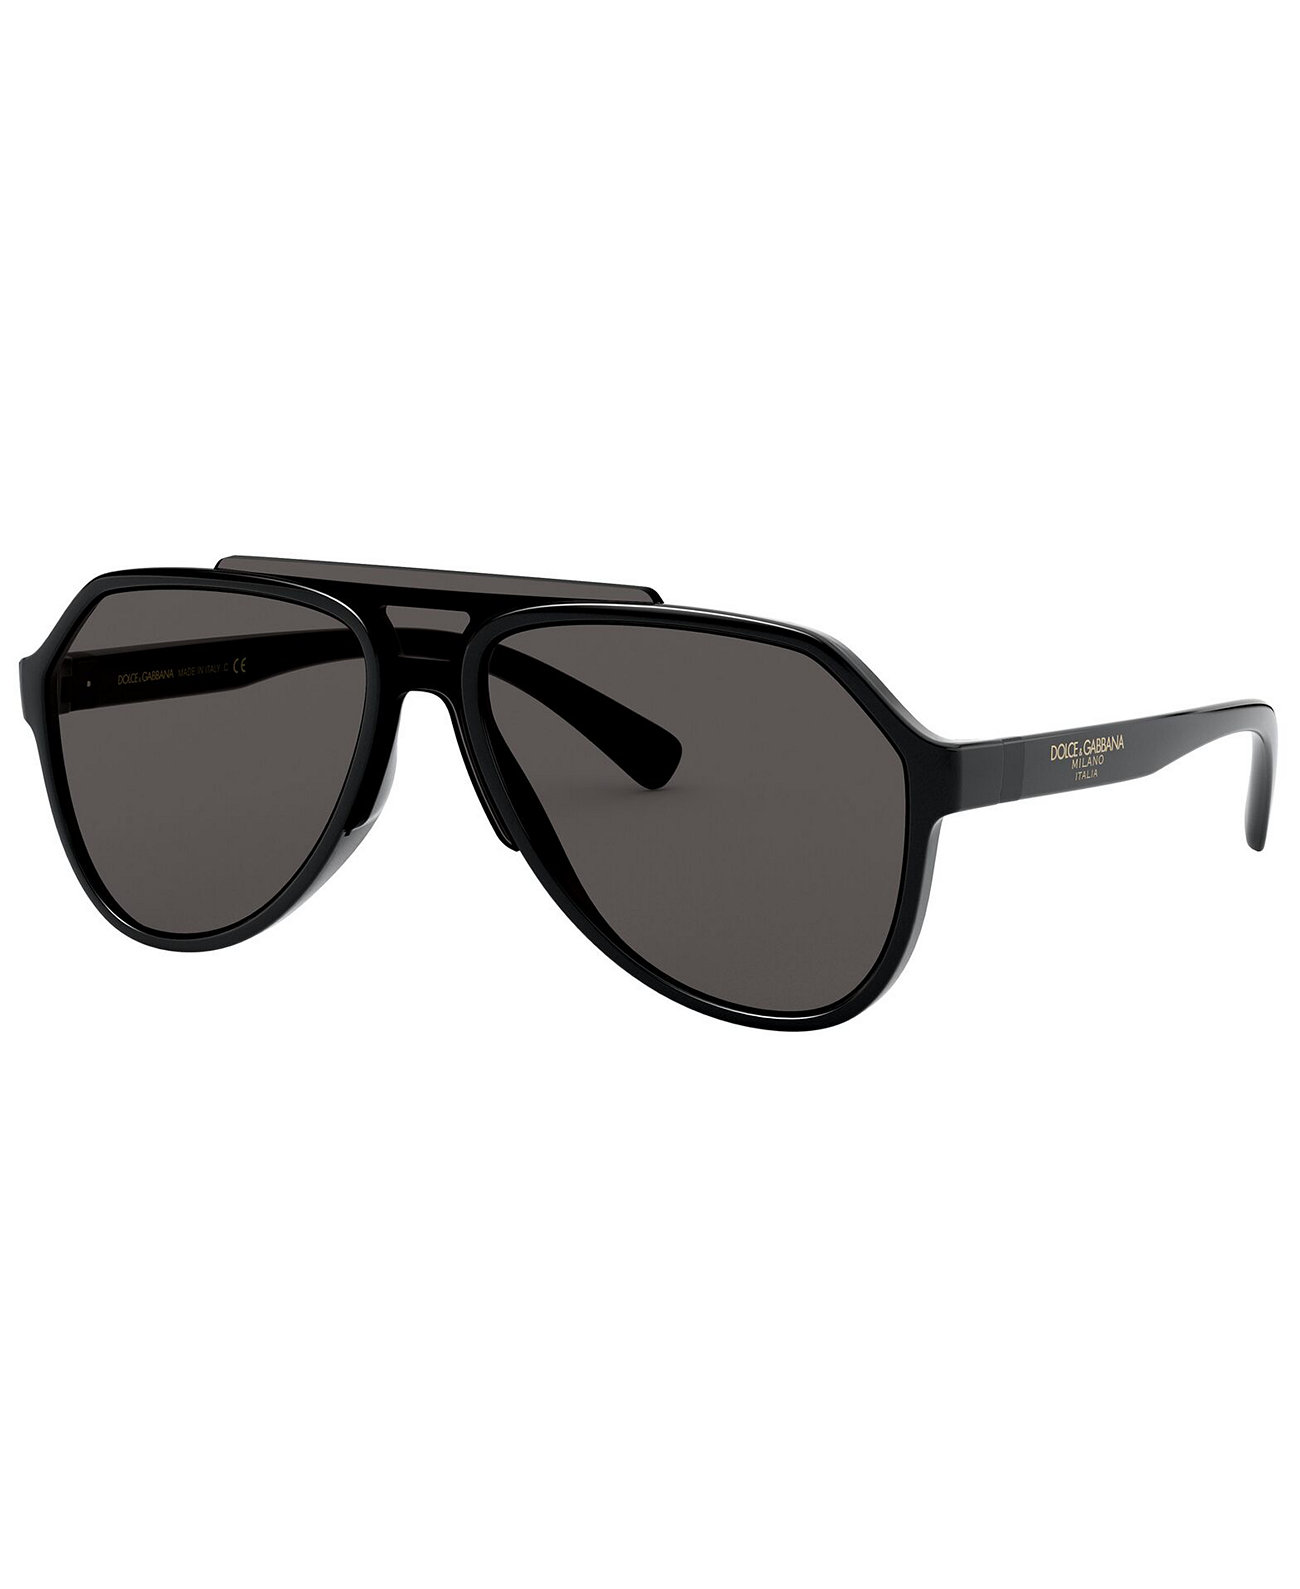 Мужские солнцезащитные очки, DG6128 Dolce & Gabbana